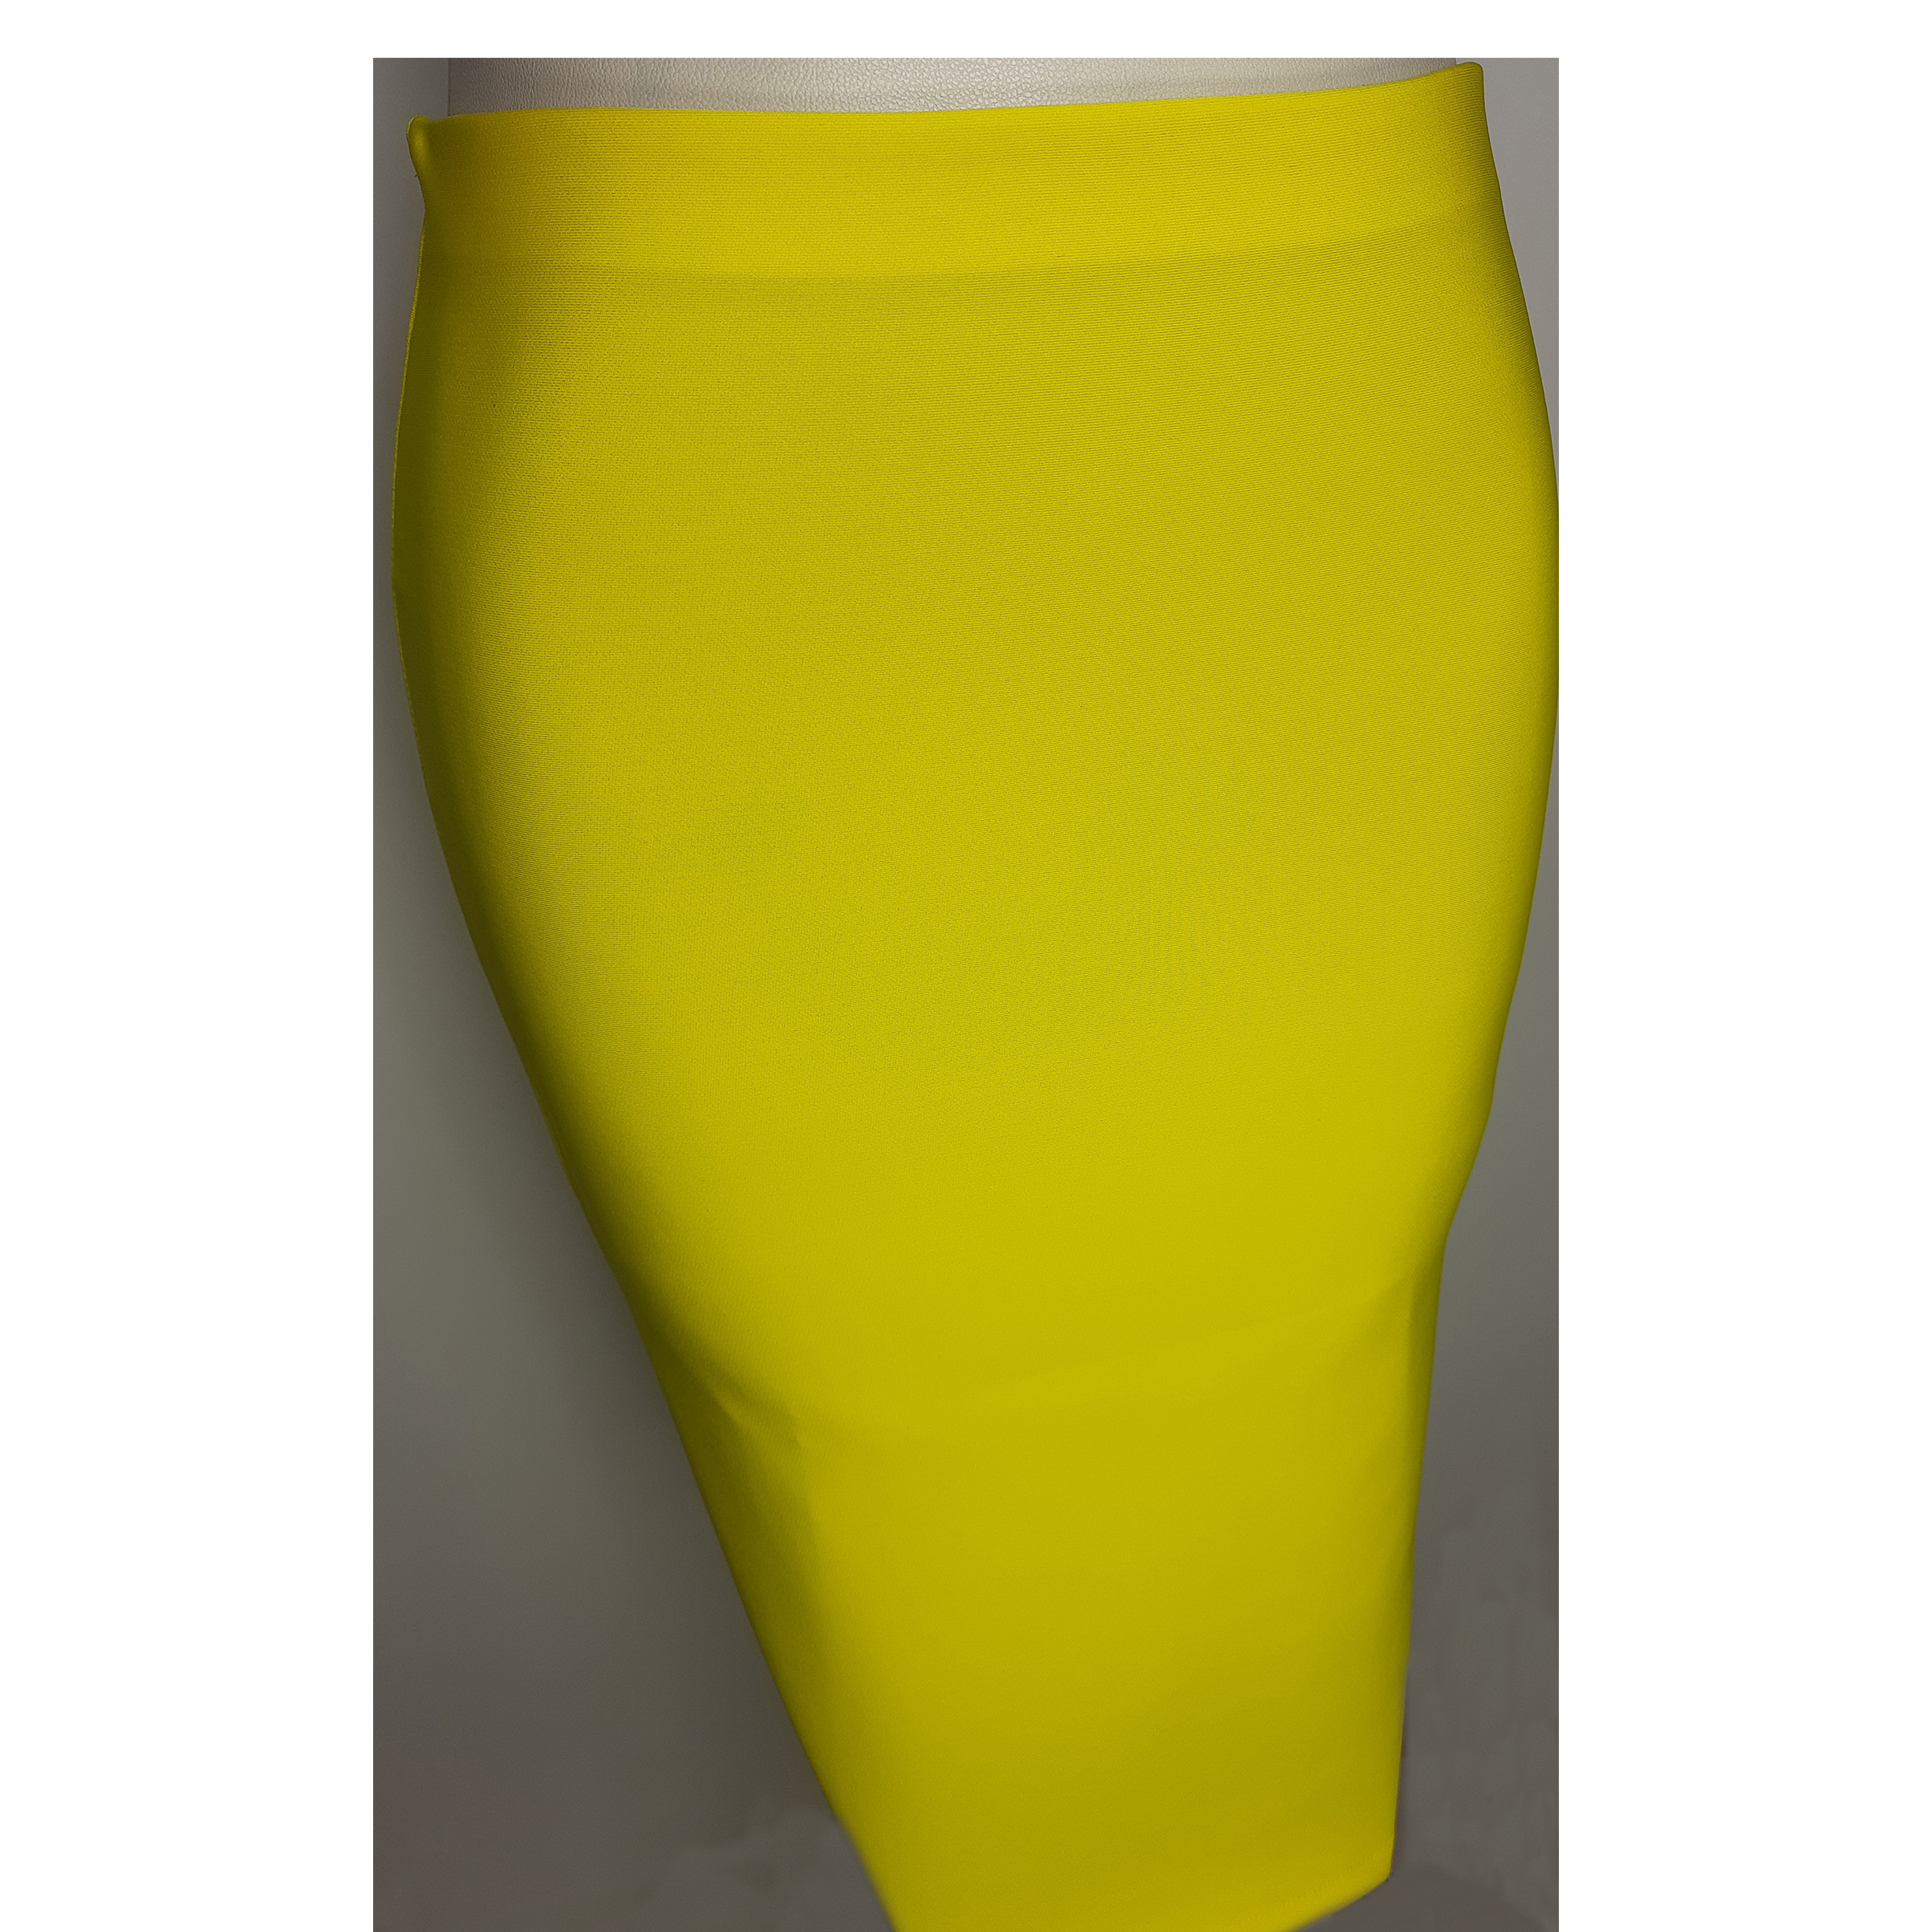 دامن زنانه مدل Dfc002y رنگ زرد -  - 3